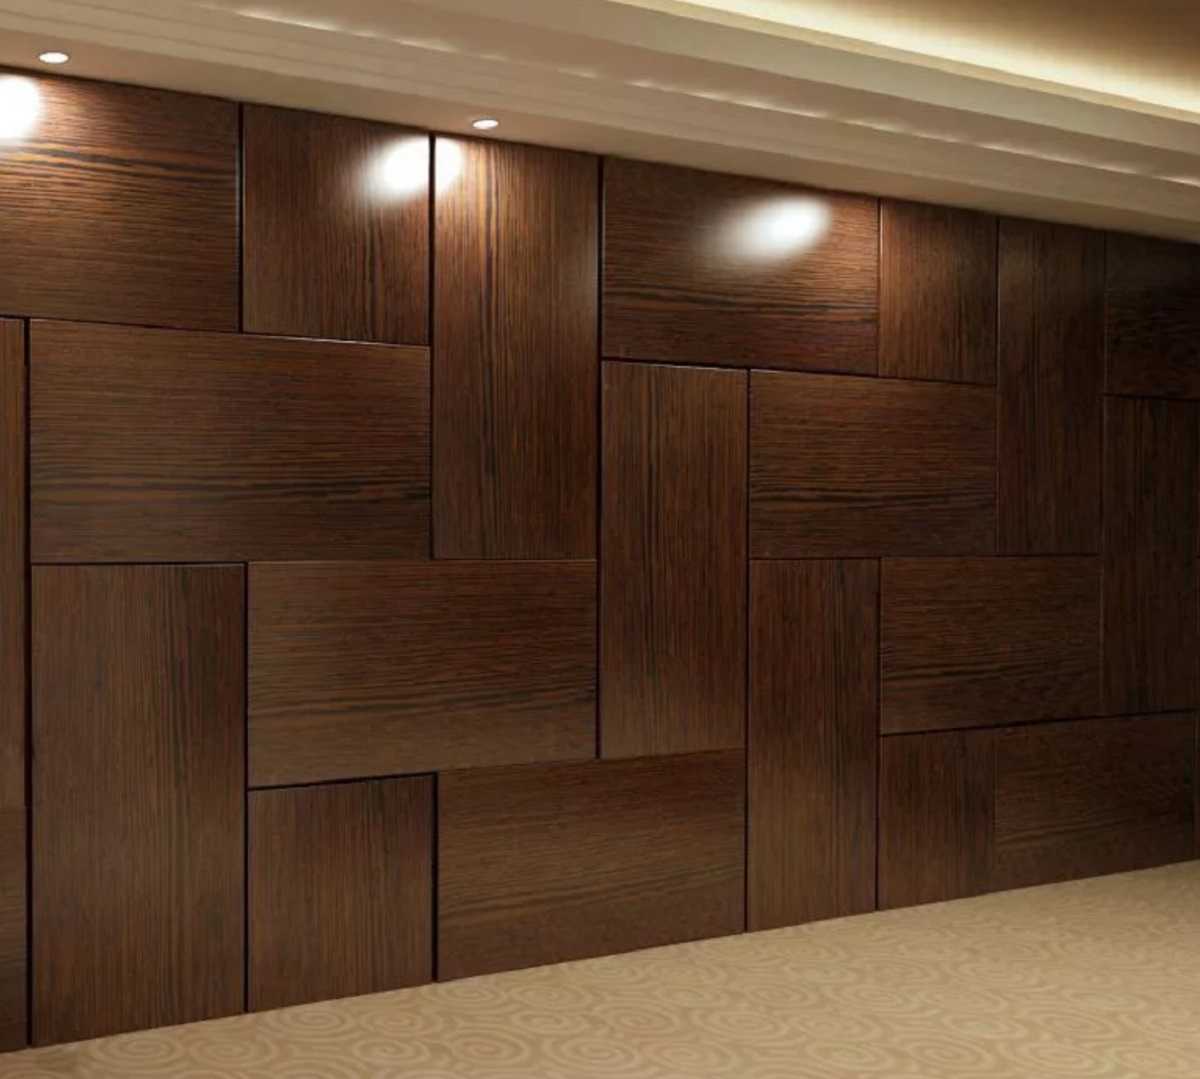 Мдф-панели для стен (52 фото): декоративные ламинированные стеновые варианты для внутренней отделки, настенные панели